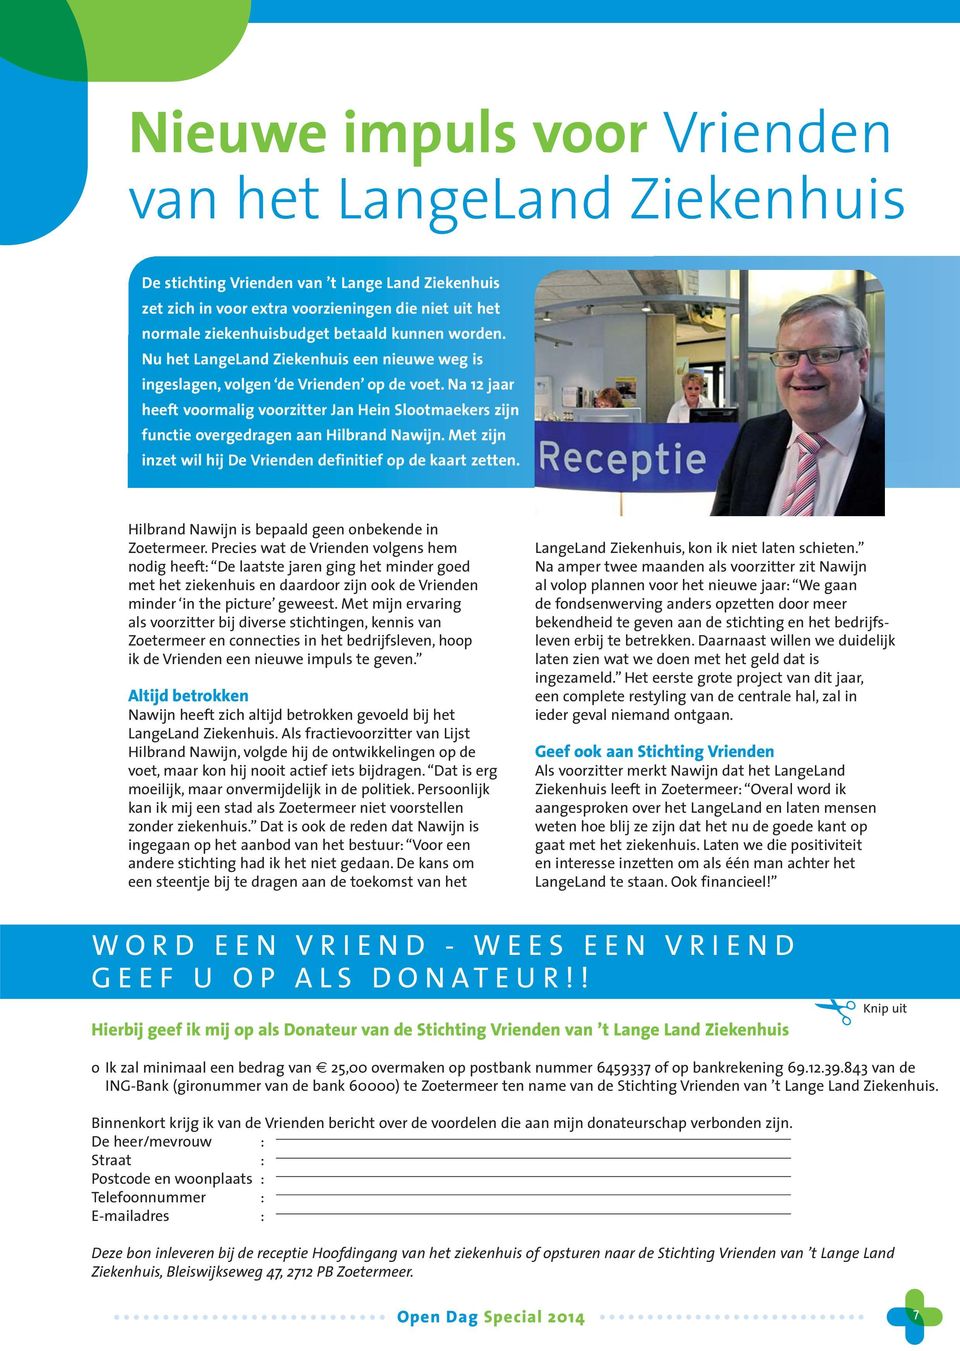 Na 12 jaar heeft voormalig voorzitter Jan Hein Slootmaekers zijn functie overgedragen aan Hilbrand Nawijn. Met zijn inzet wil hij De Vrienden definitief op de kaart zetten.